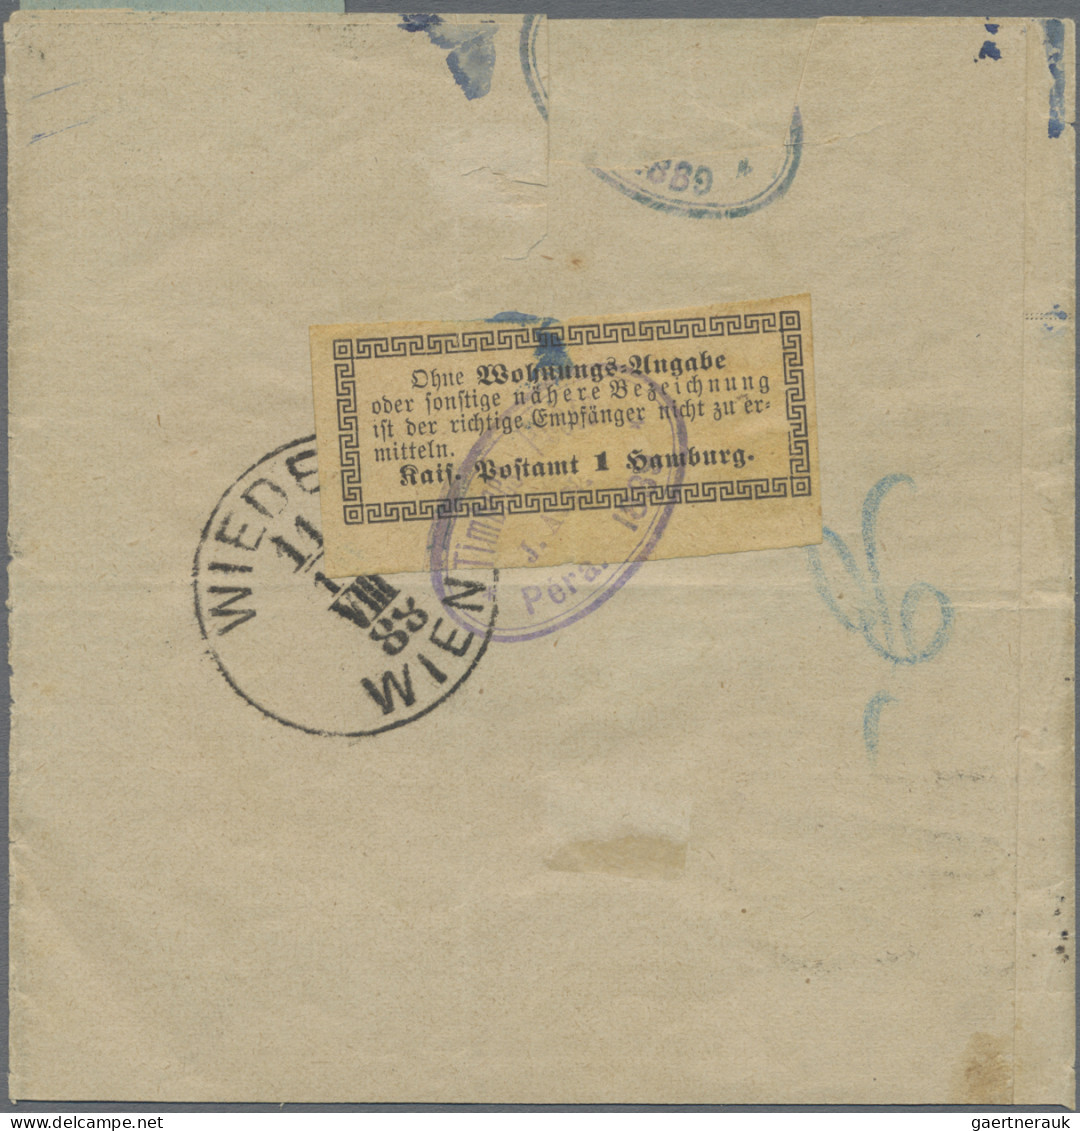 Deutsche Post In Der Türkei: 1888, Freimarke Mit Aufdruck 10 PA Auf 5 Pf Violett - Turkey (offices)